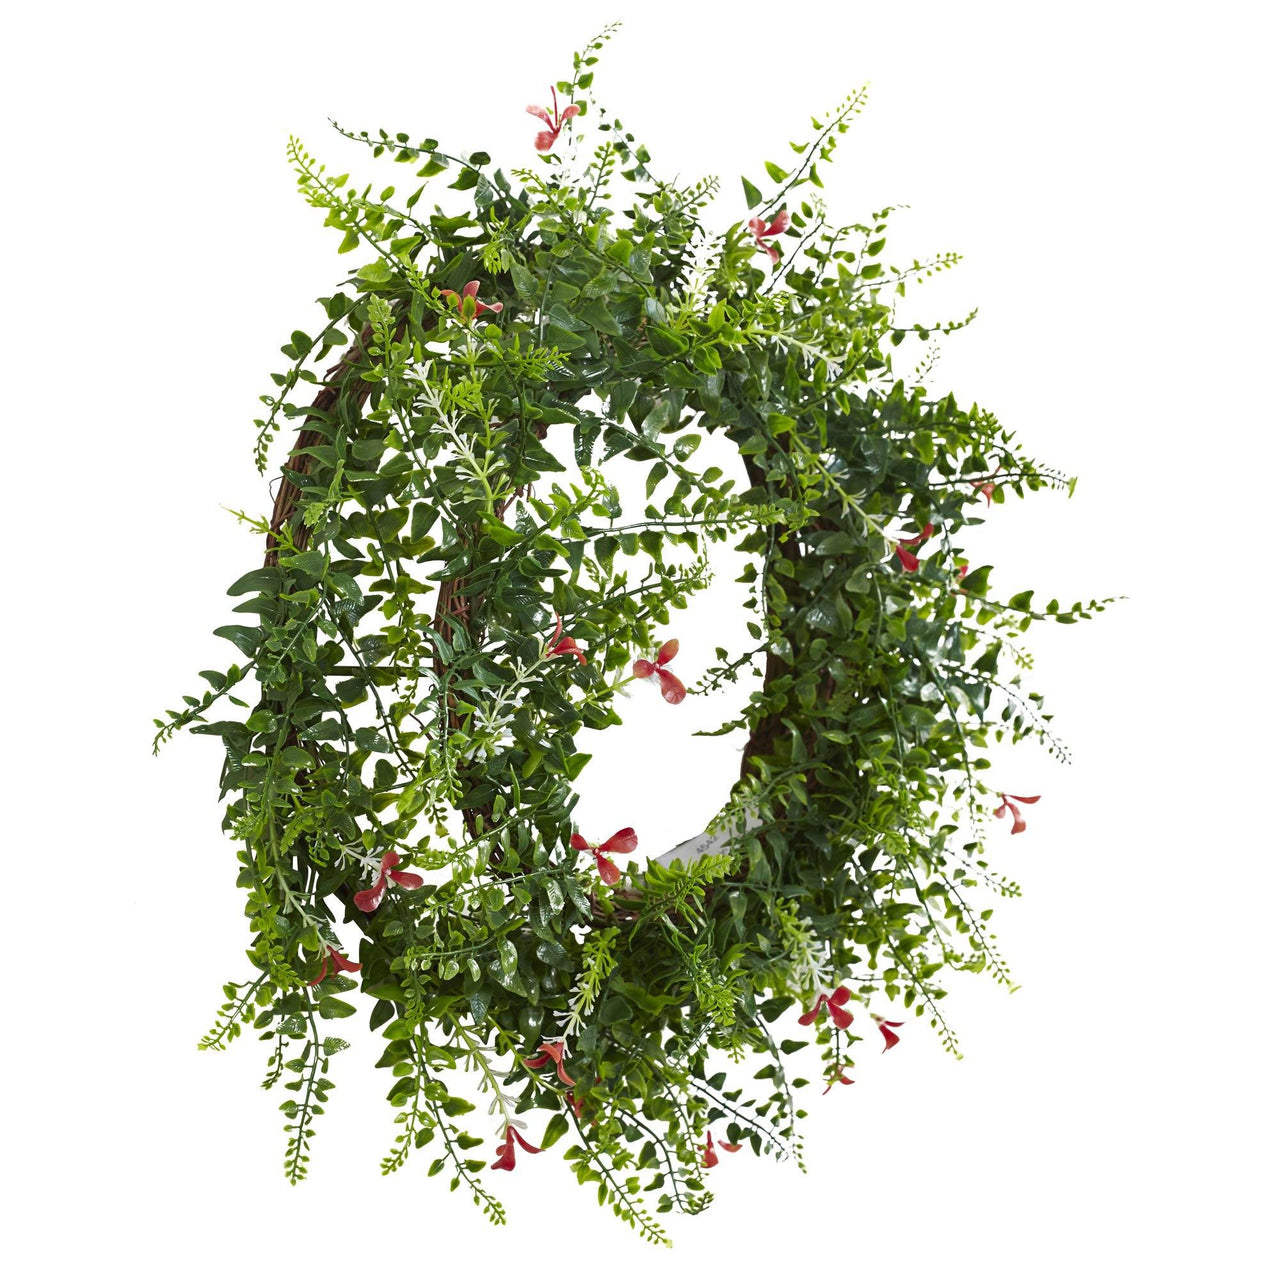 18” Floral & Fern Double Ring Wreath w/Twig Base - The Fox Decor